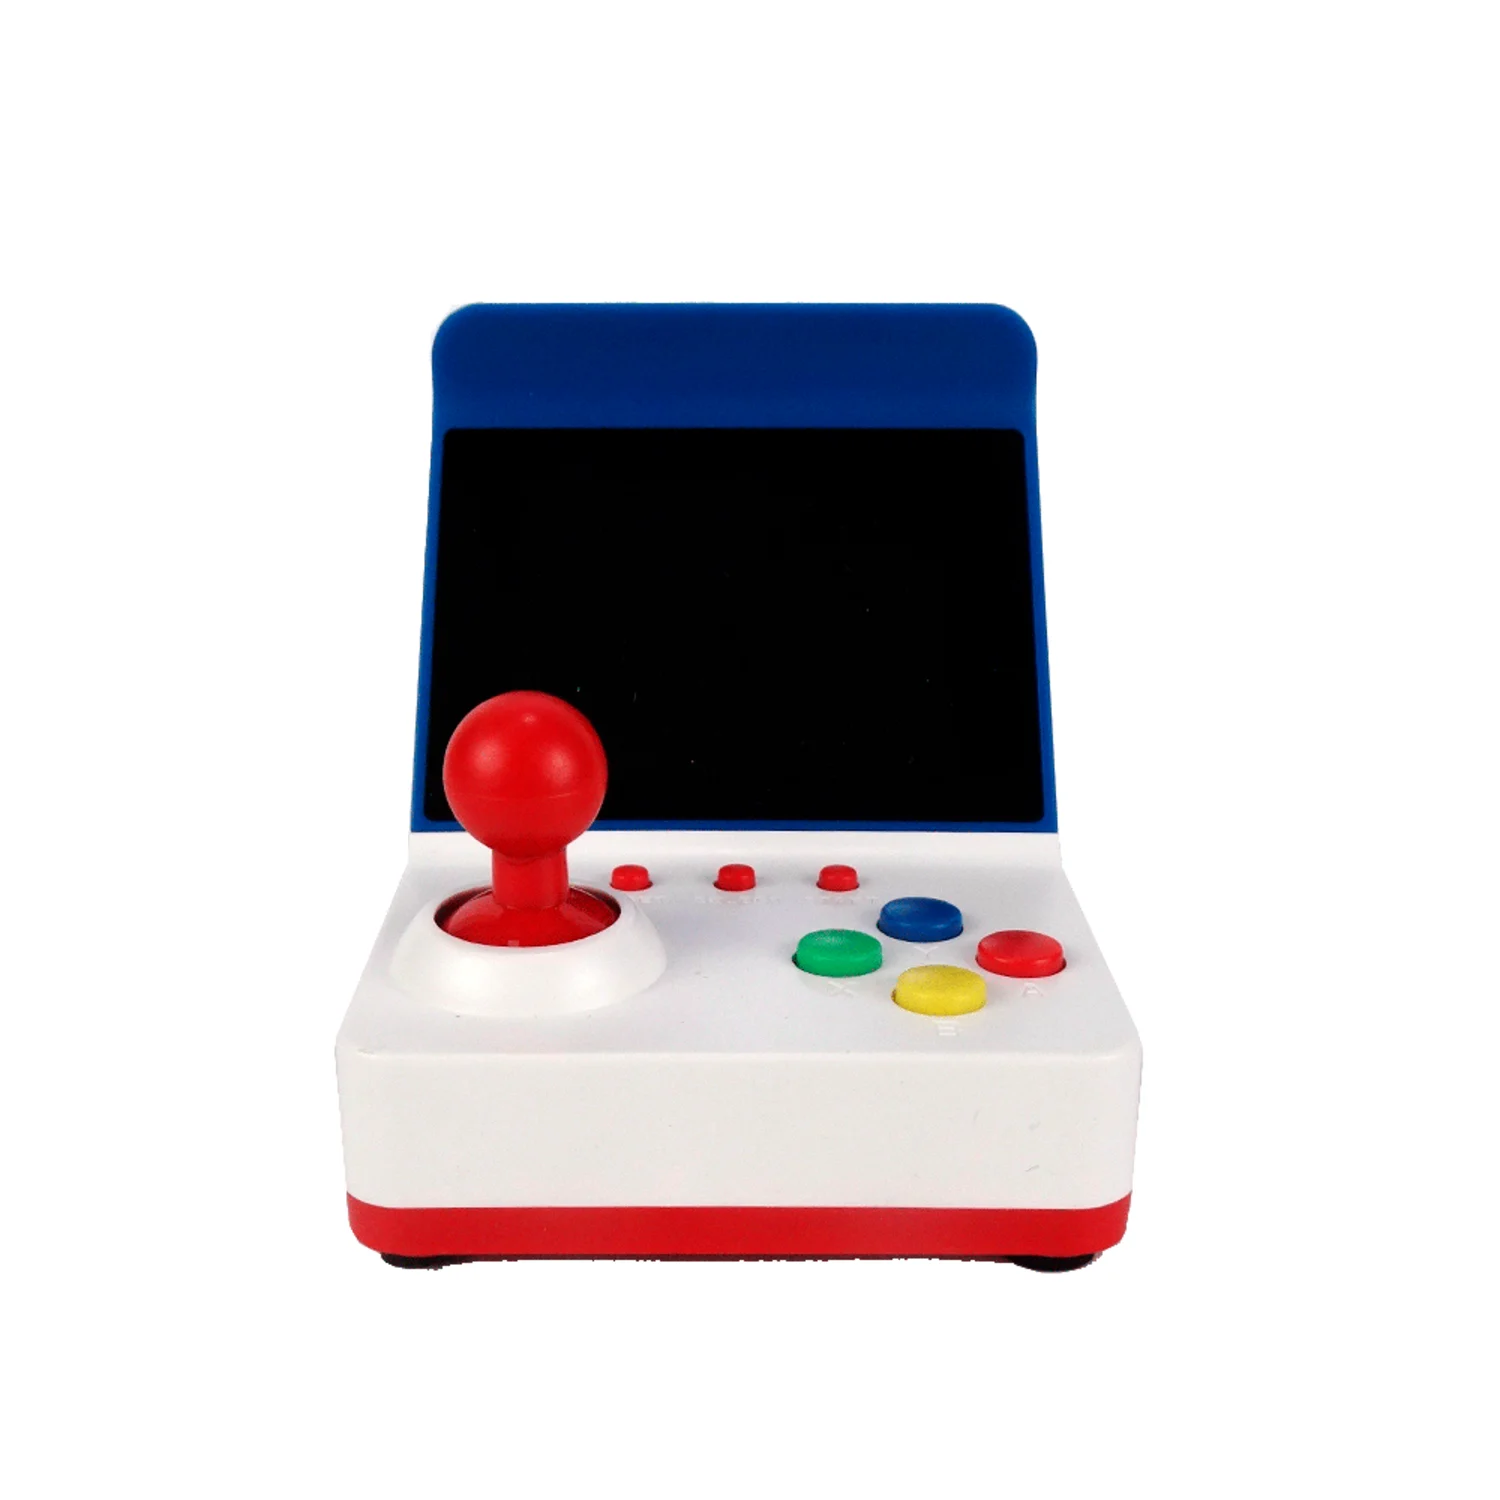 Console Retro Arcade FC 8Bit / 360 Jogos em 1 - Branco e azul